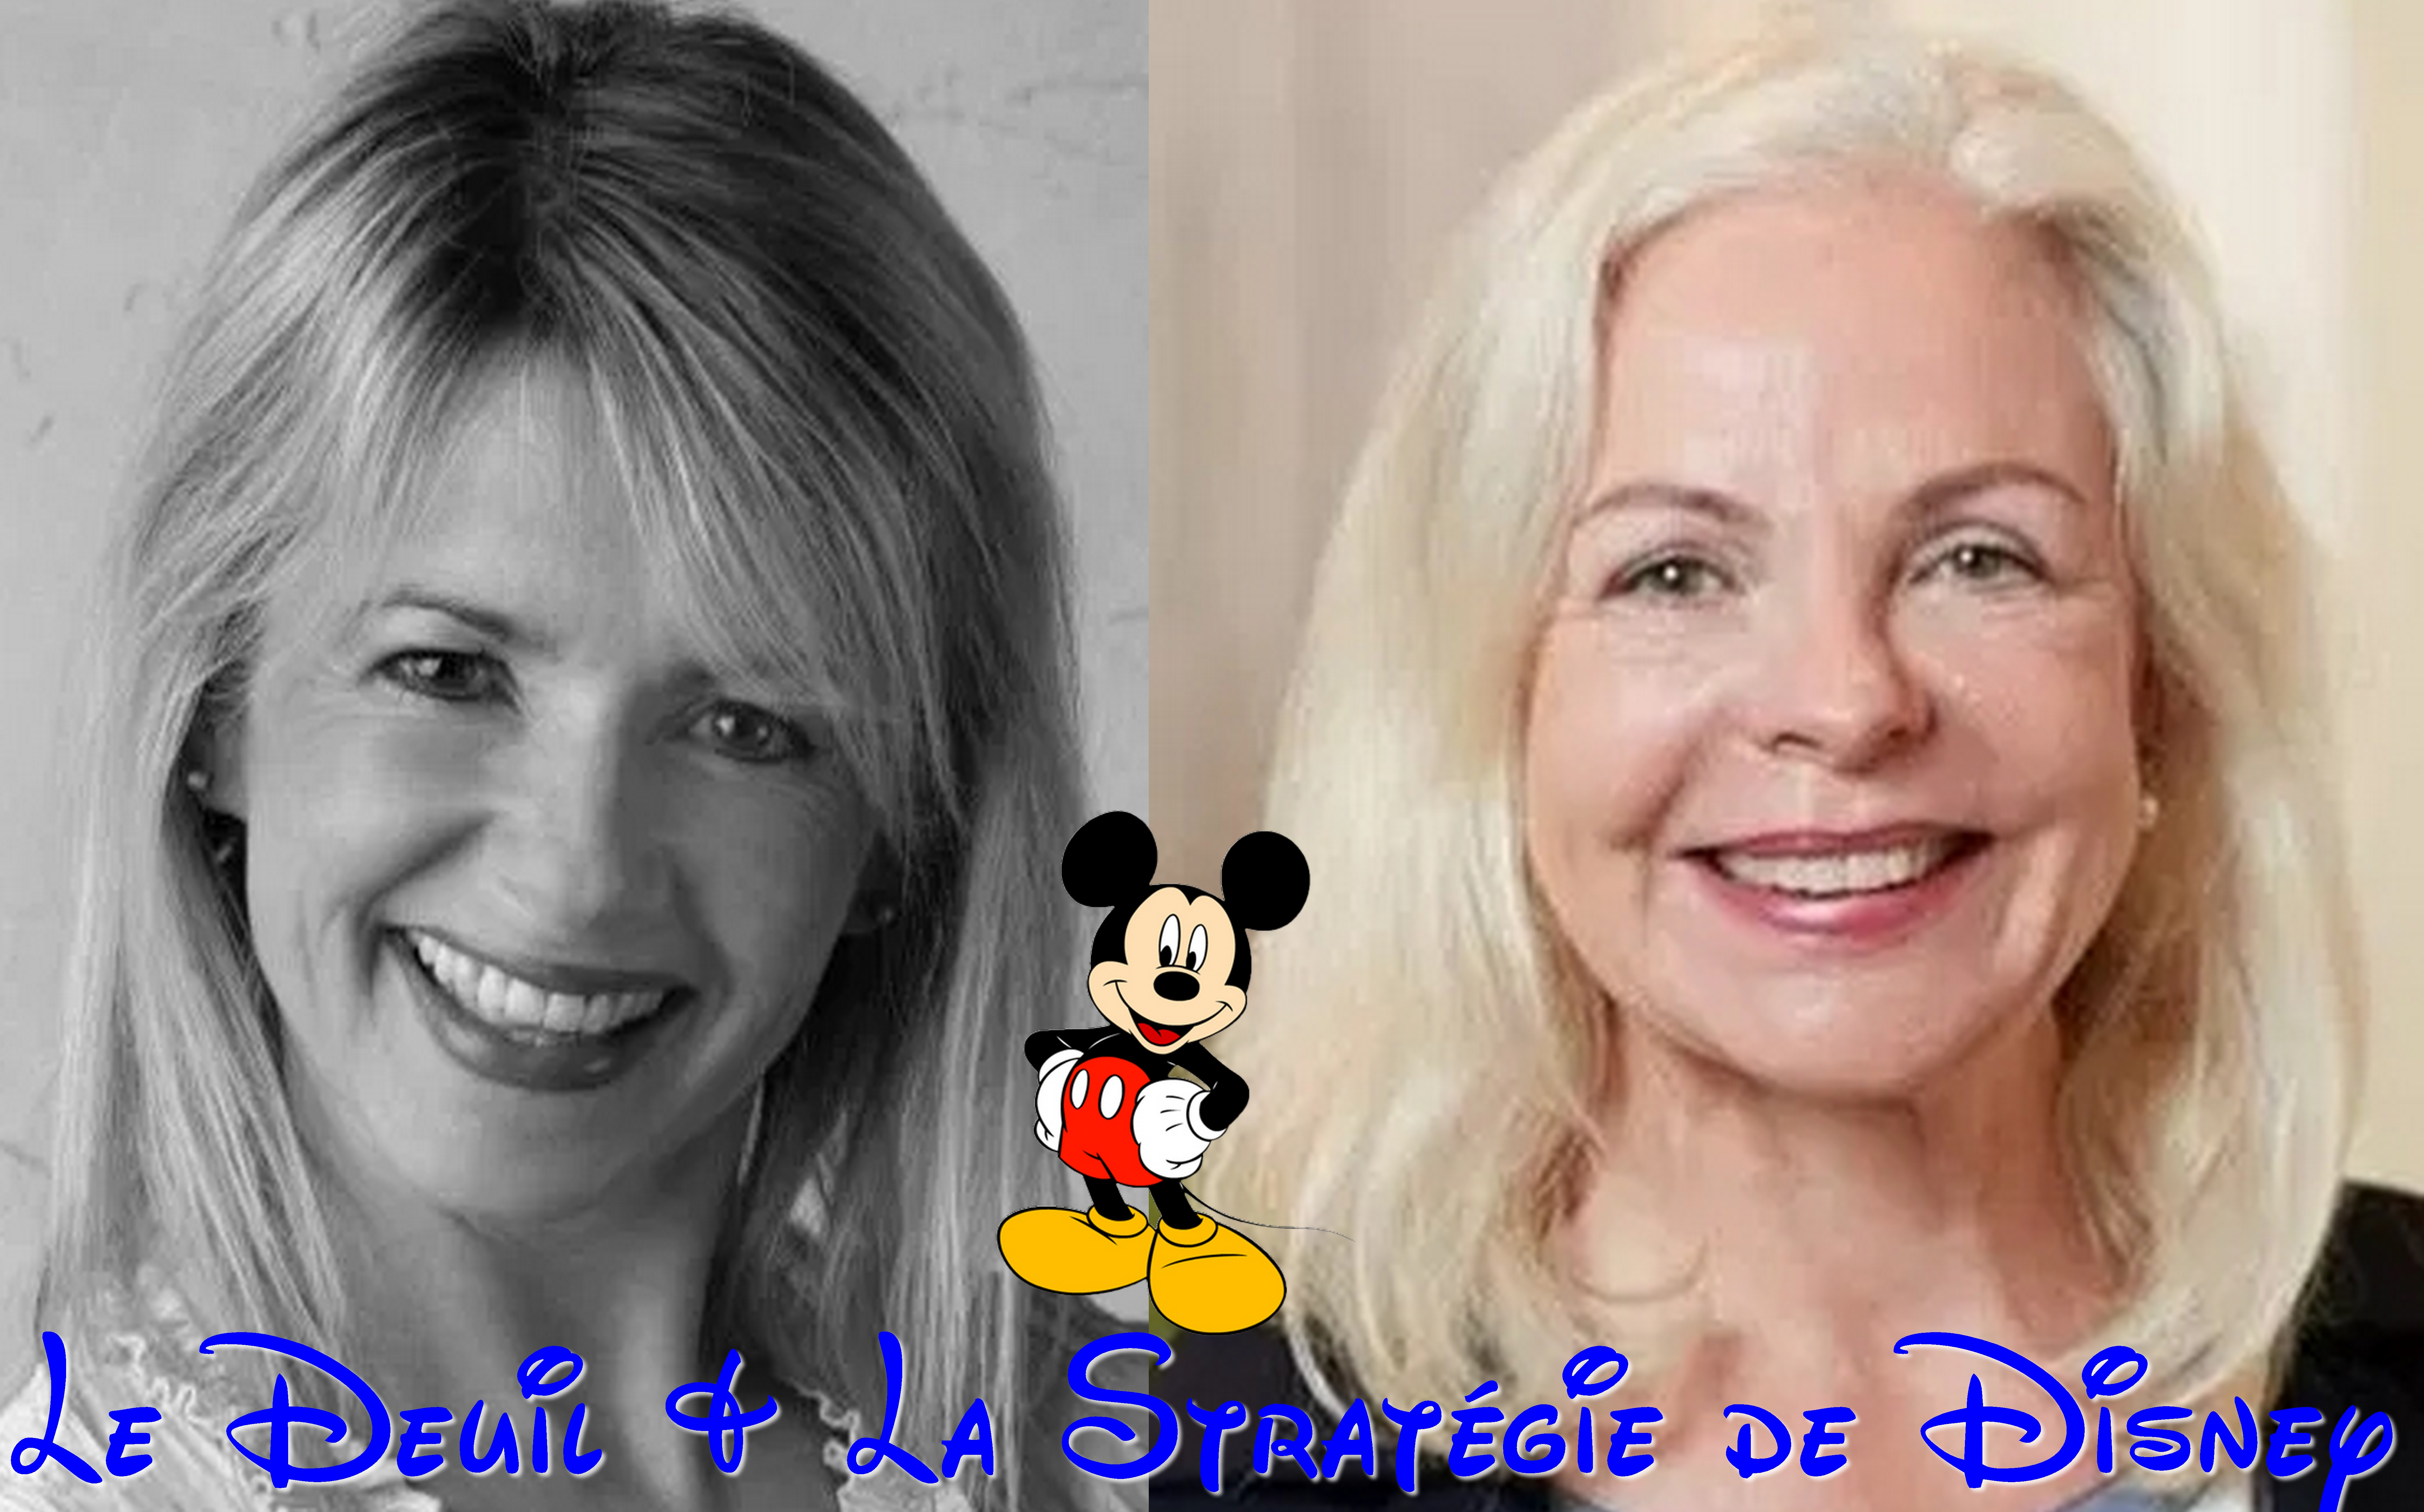 Le Deuil & La Stratégie de Disney